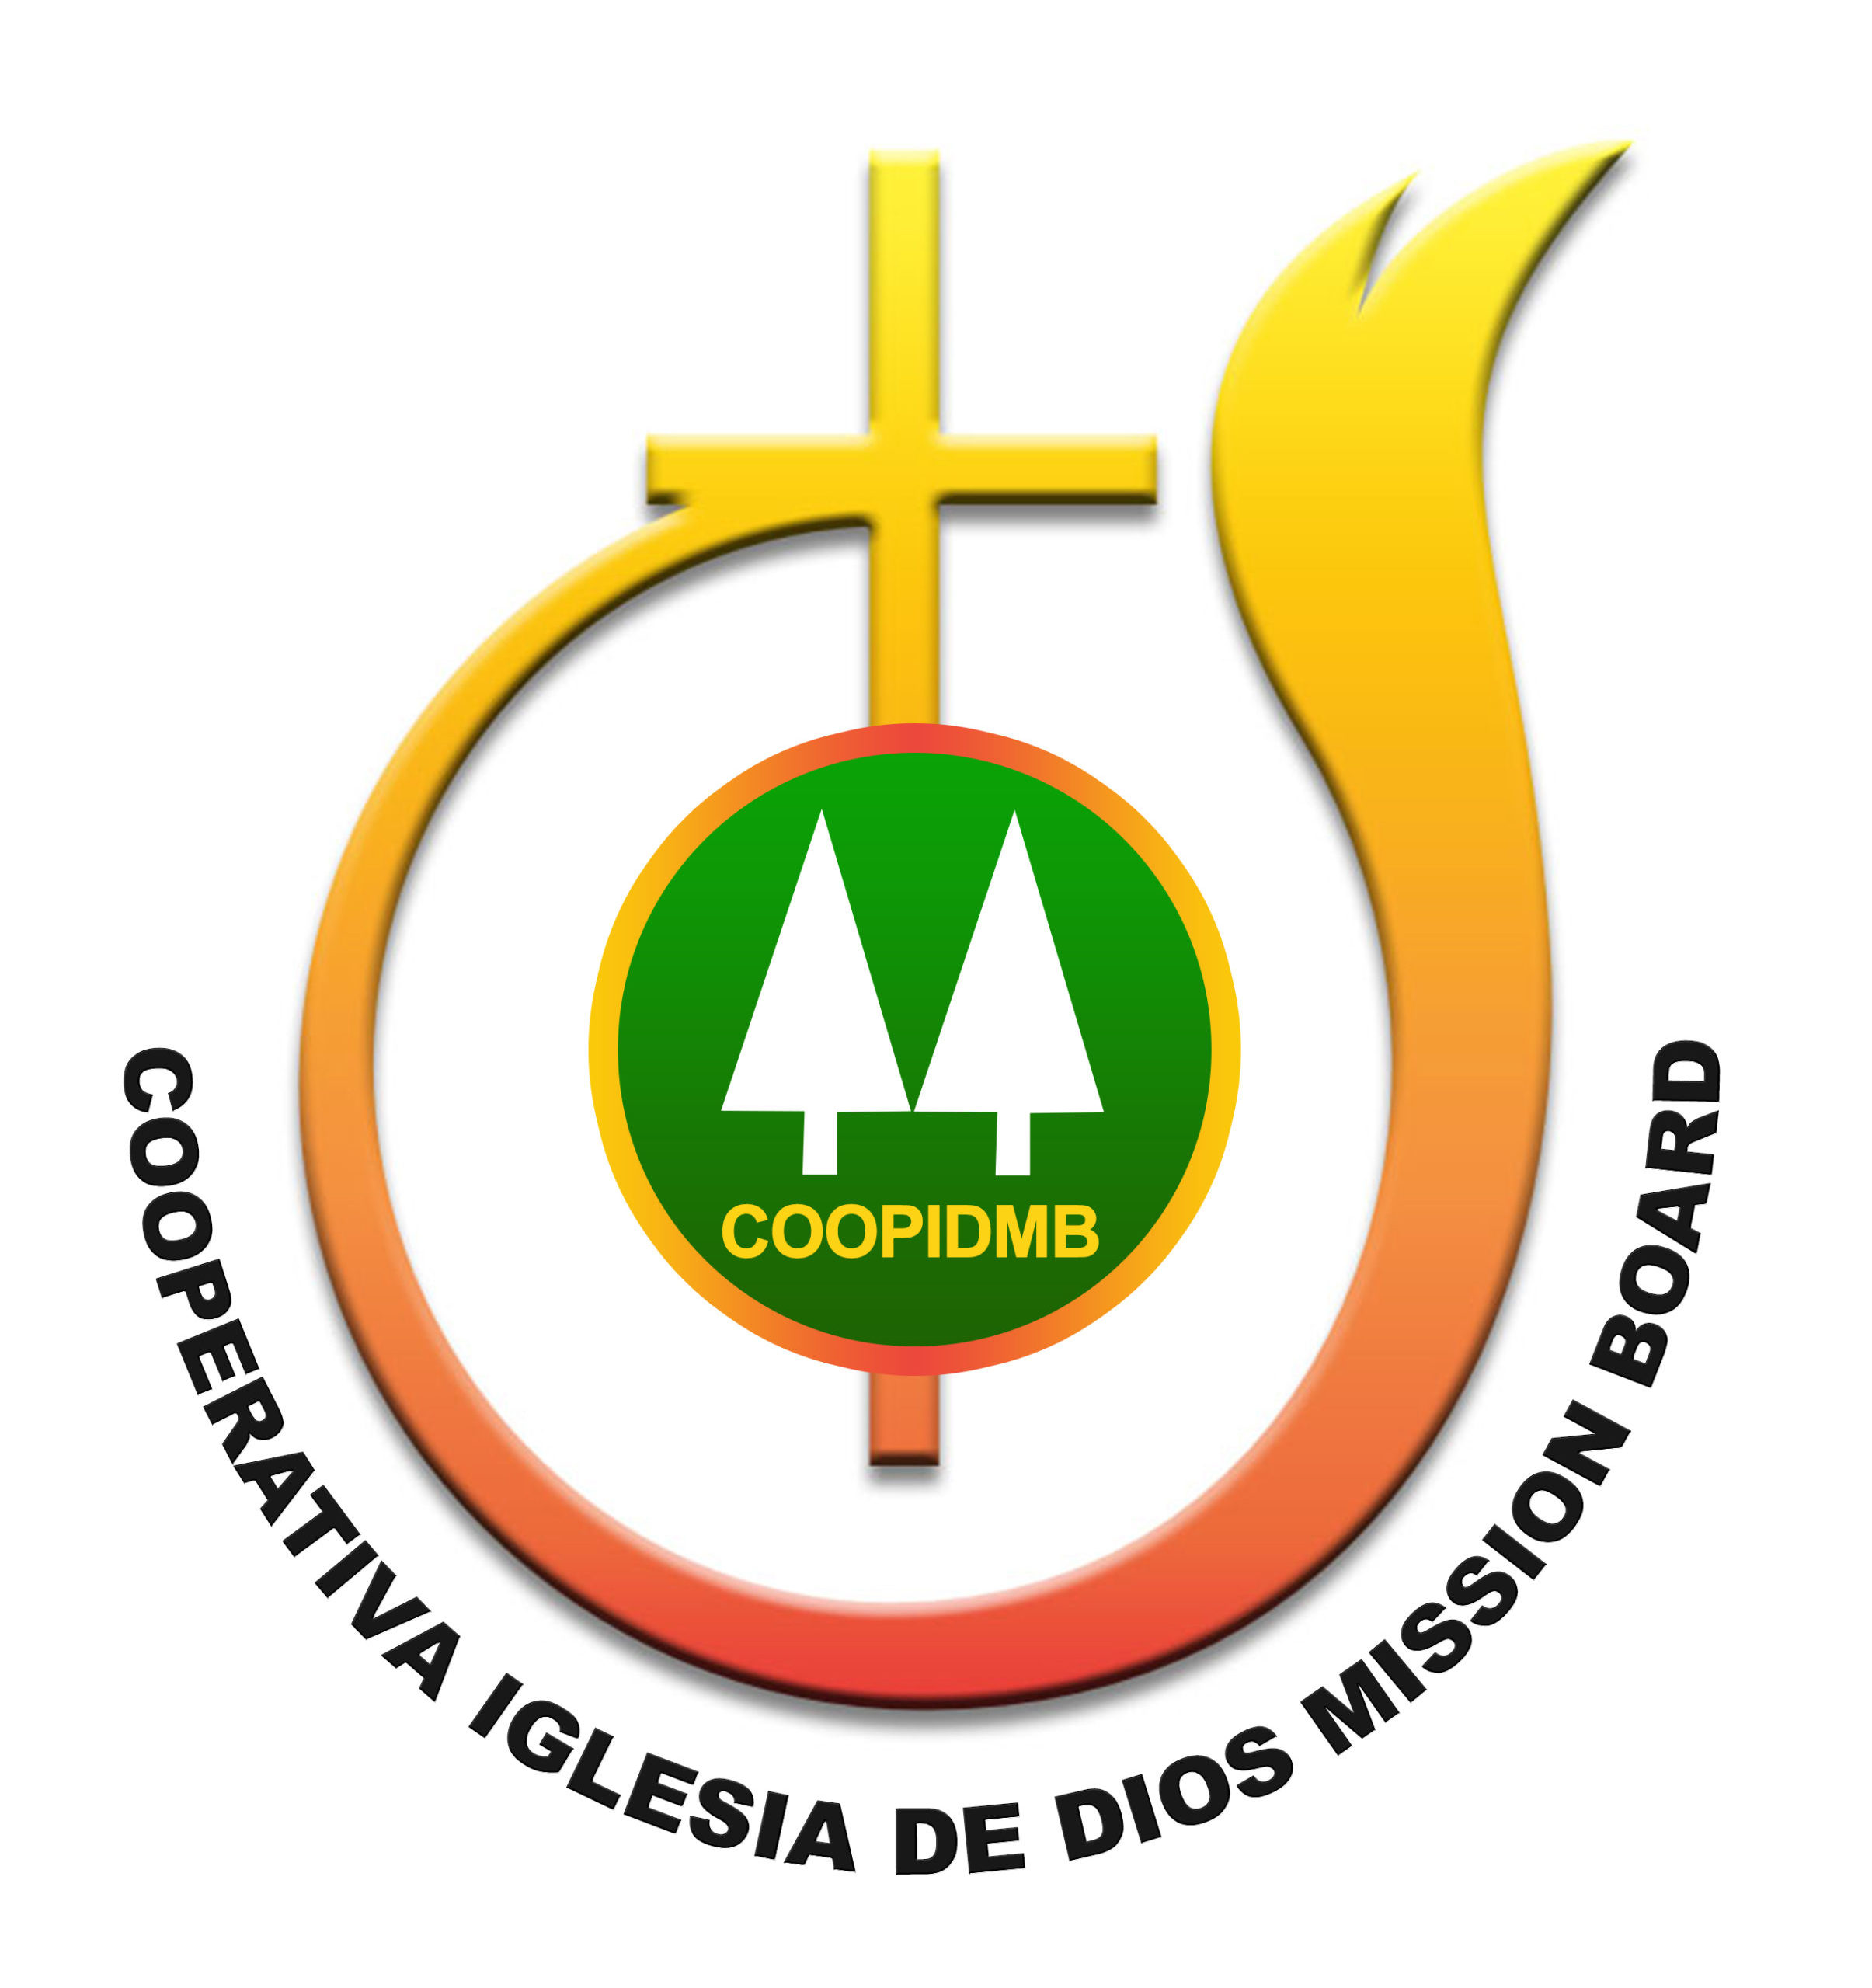 Cooperativa Ahorro y Credito Iglesia de Dios MB